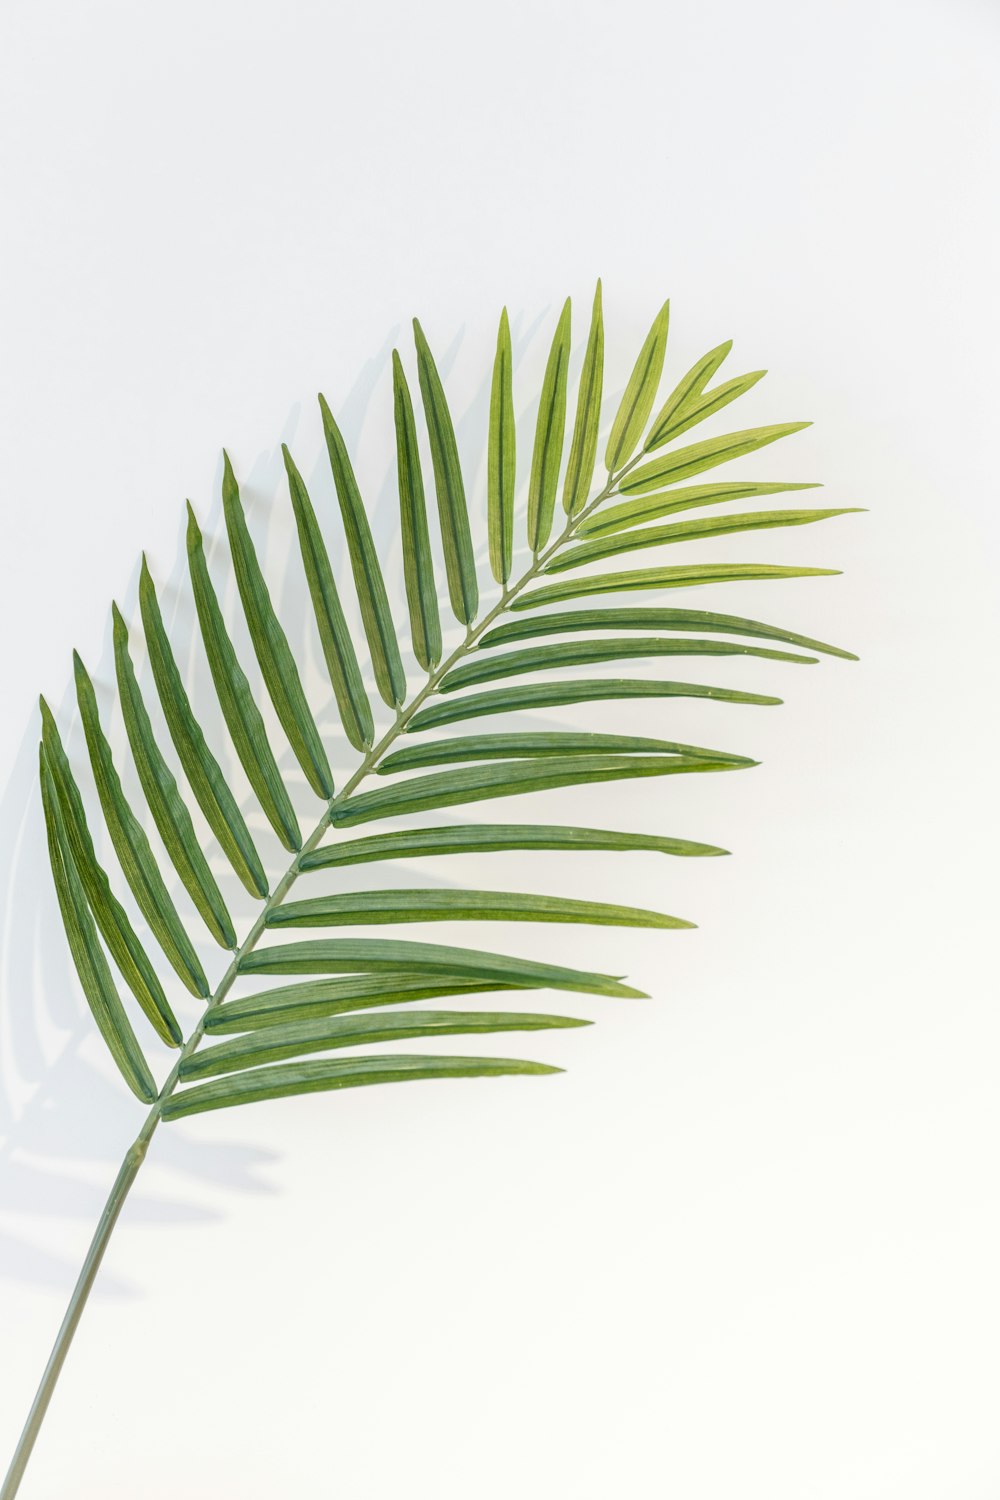 흰색 배경에 녹색 잎 식물